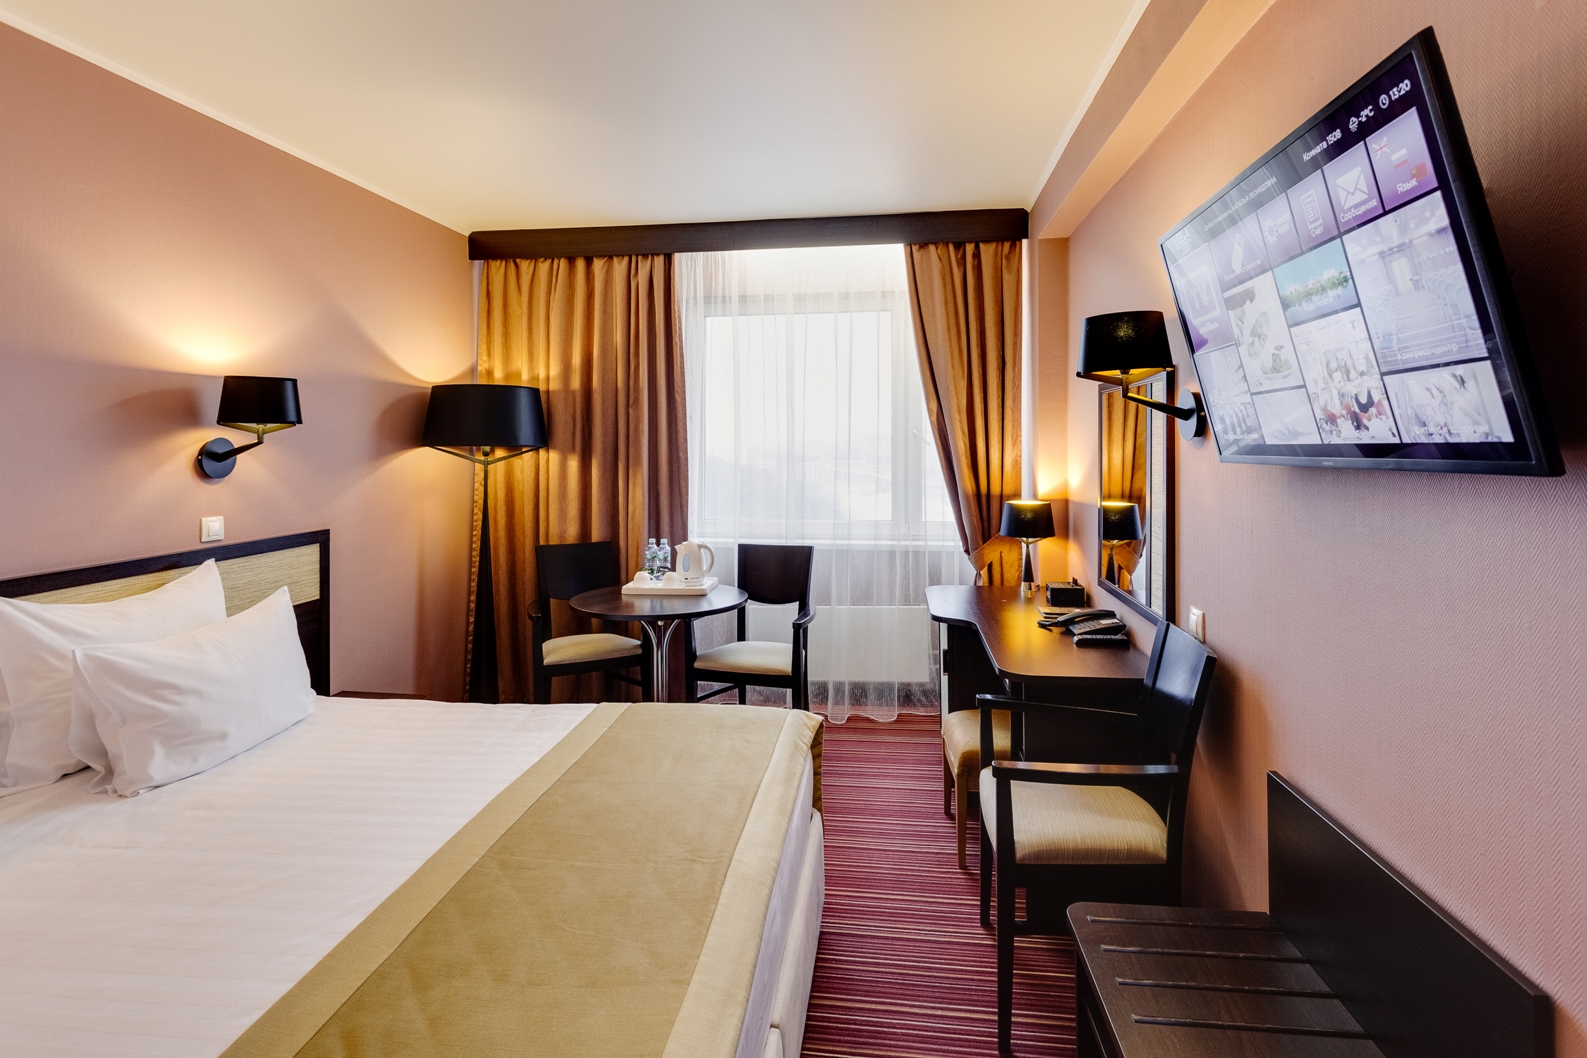 Комфортабельные номера отеля подходят как для краткосрочного, так и для продолжительного пребывания гостей